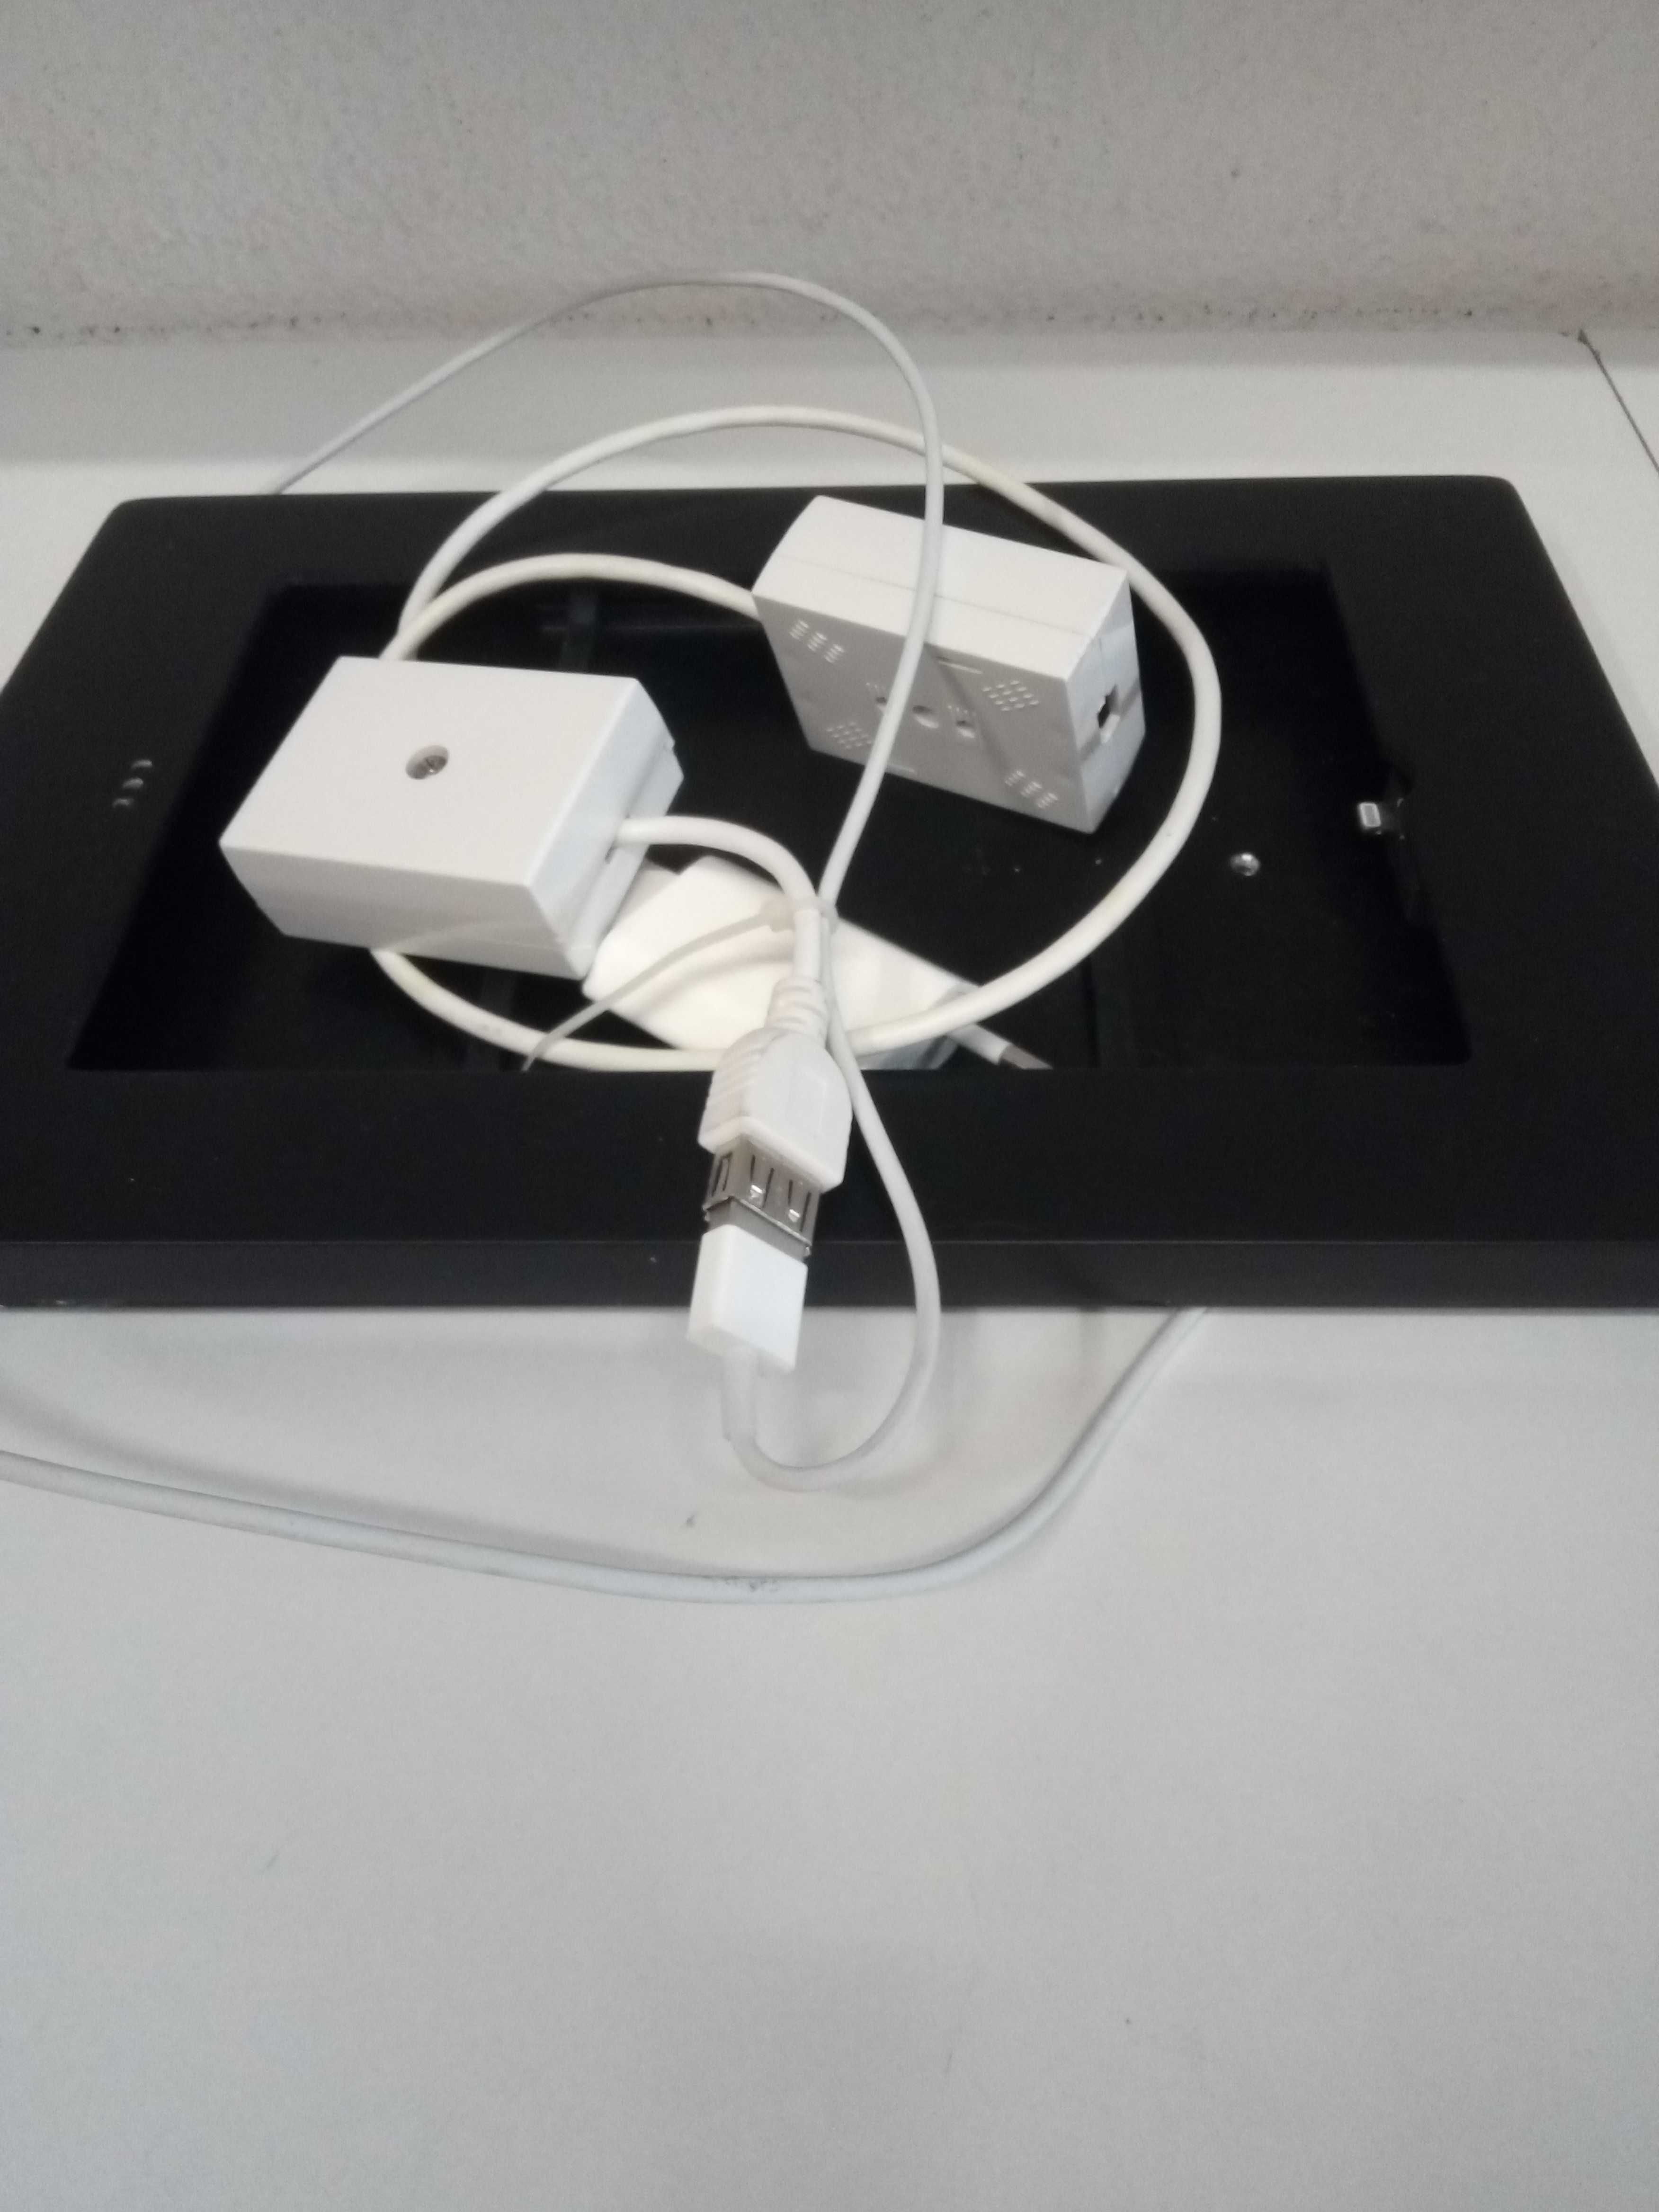 Miniquadrado de recarga para mini iPad